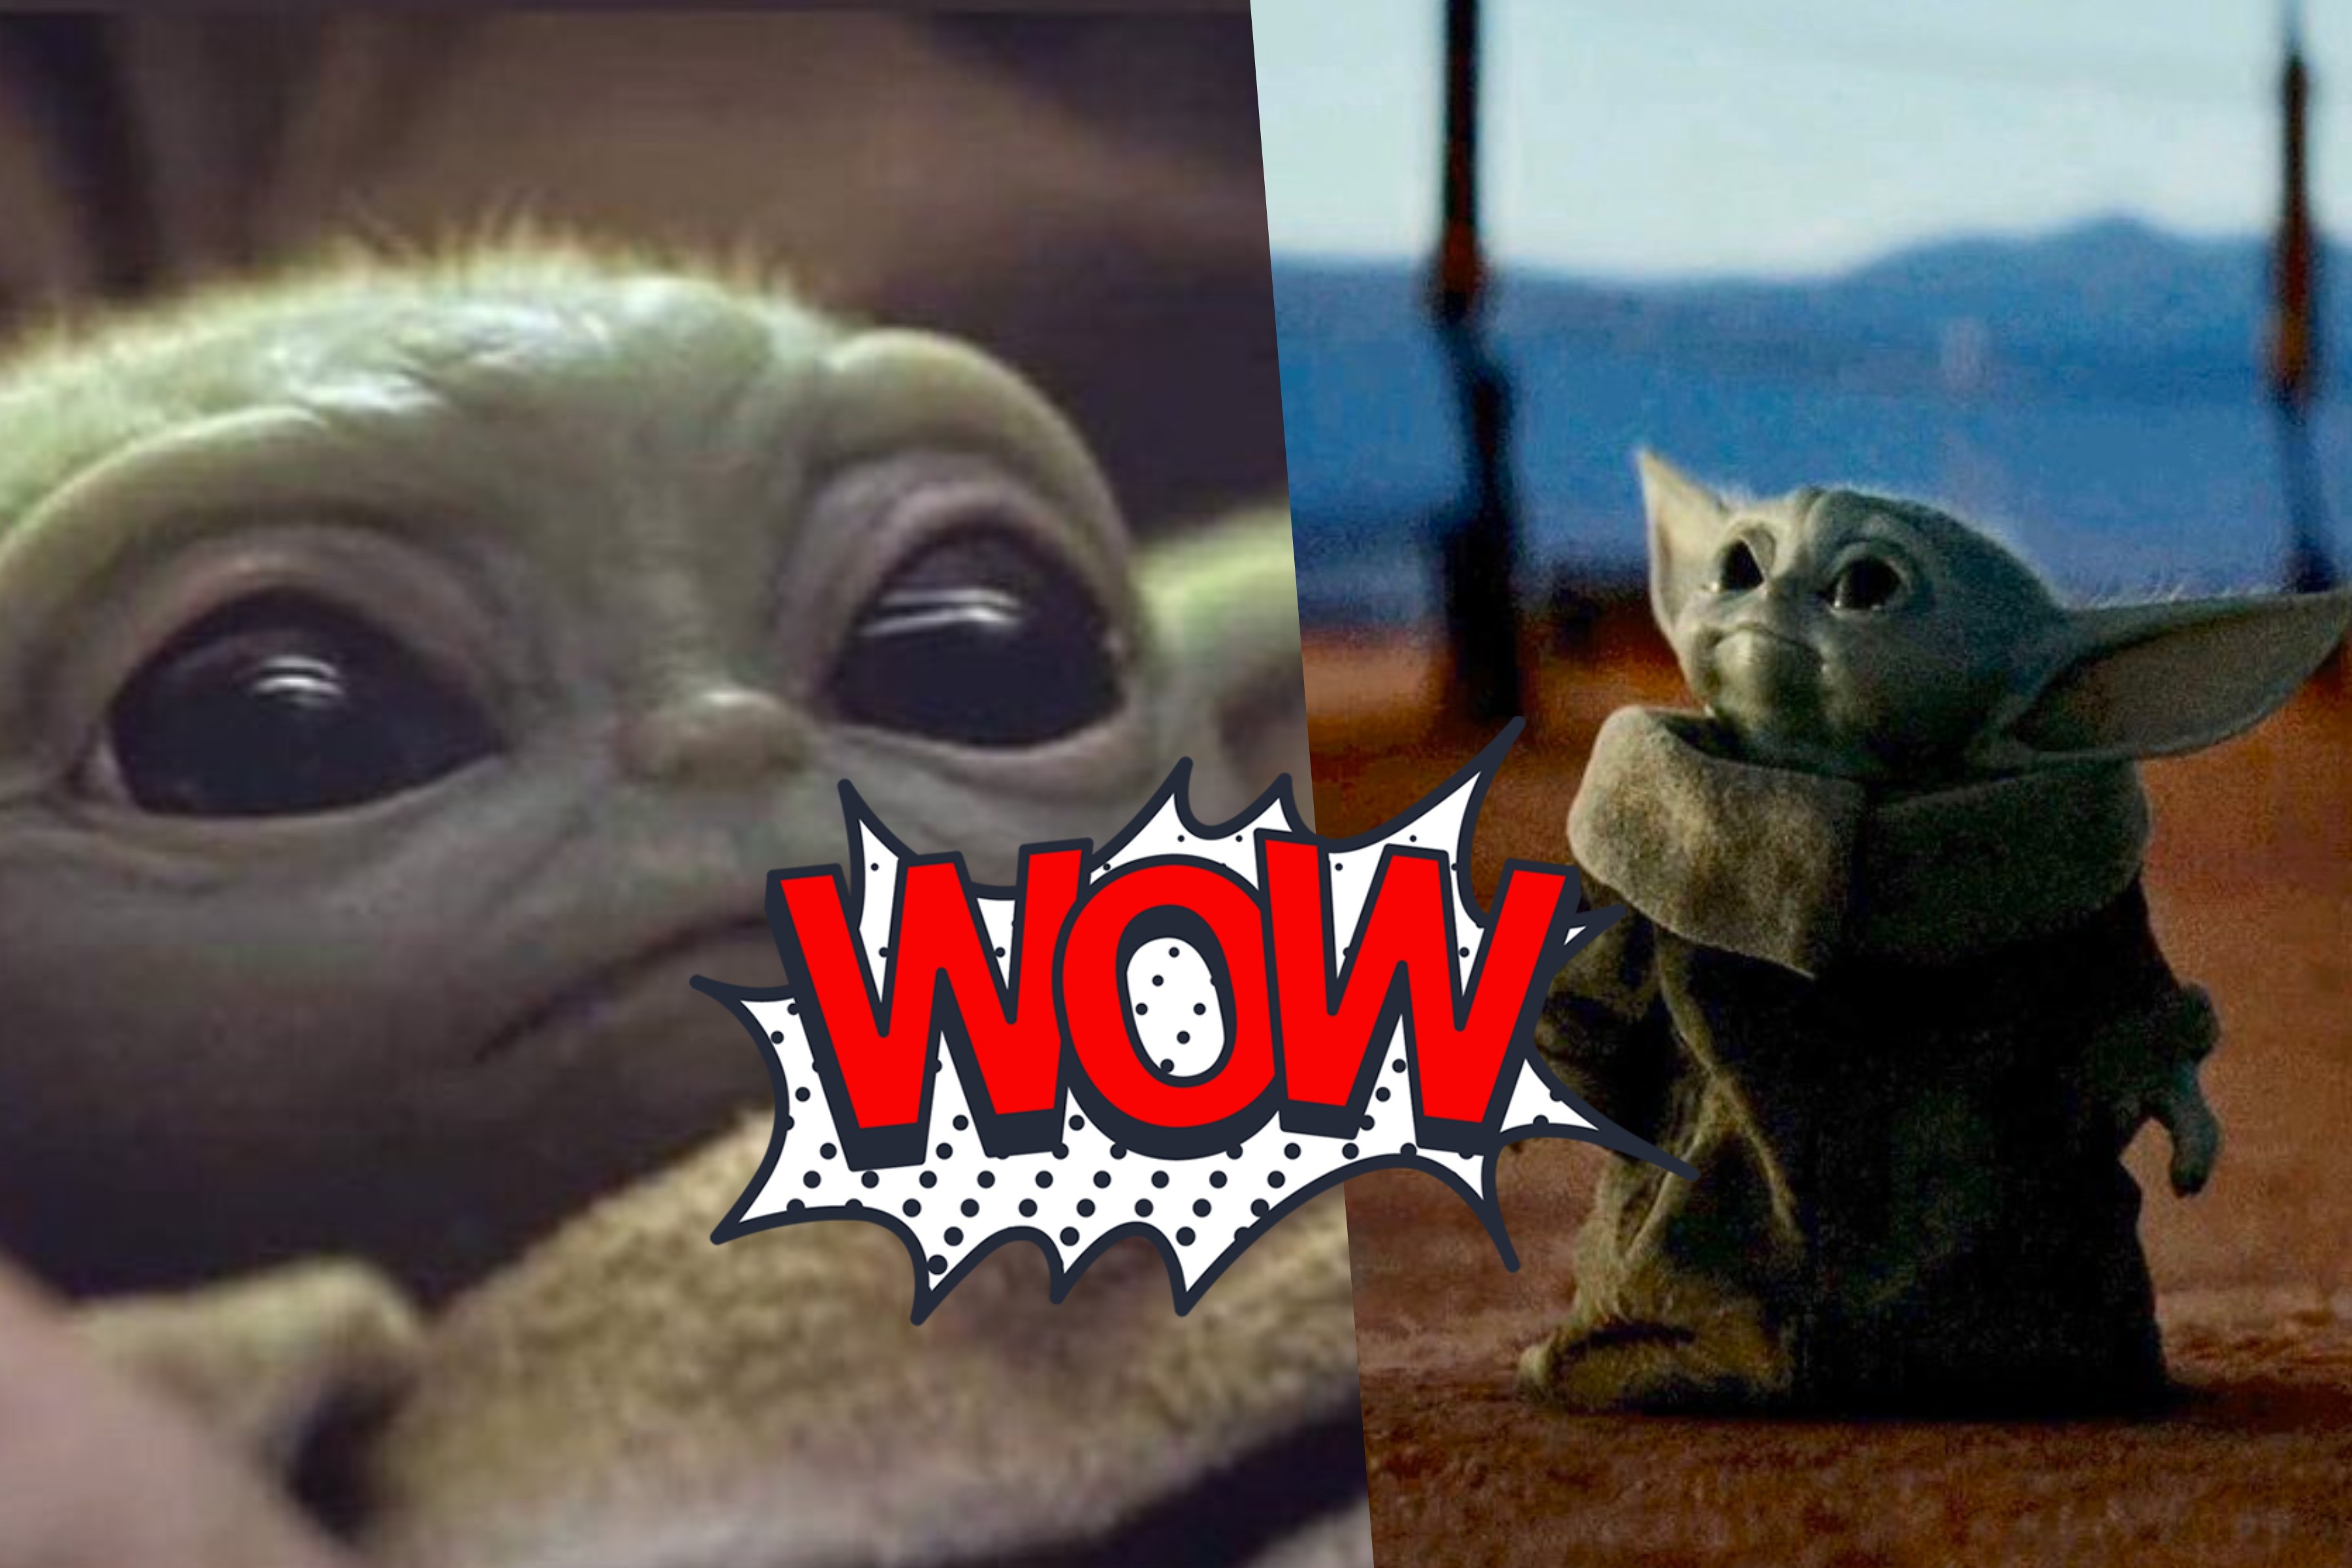 Откуда взялся малыш Йода и почему все сходят по нему с ума: 10 лучших мемов